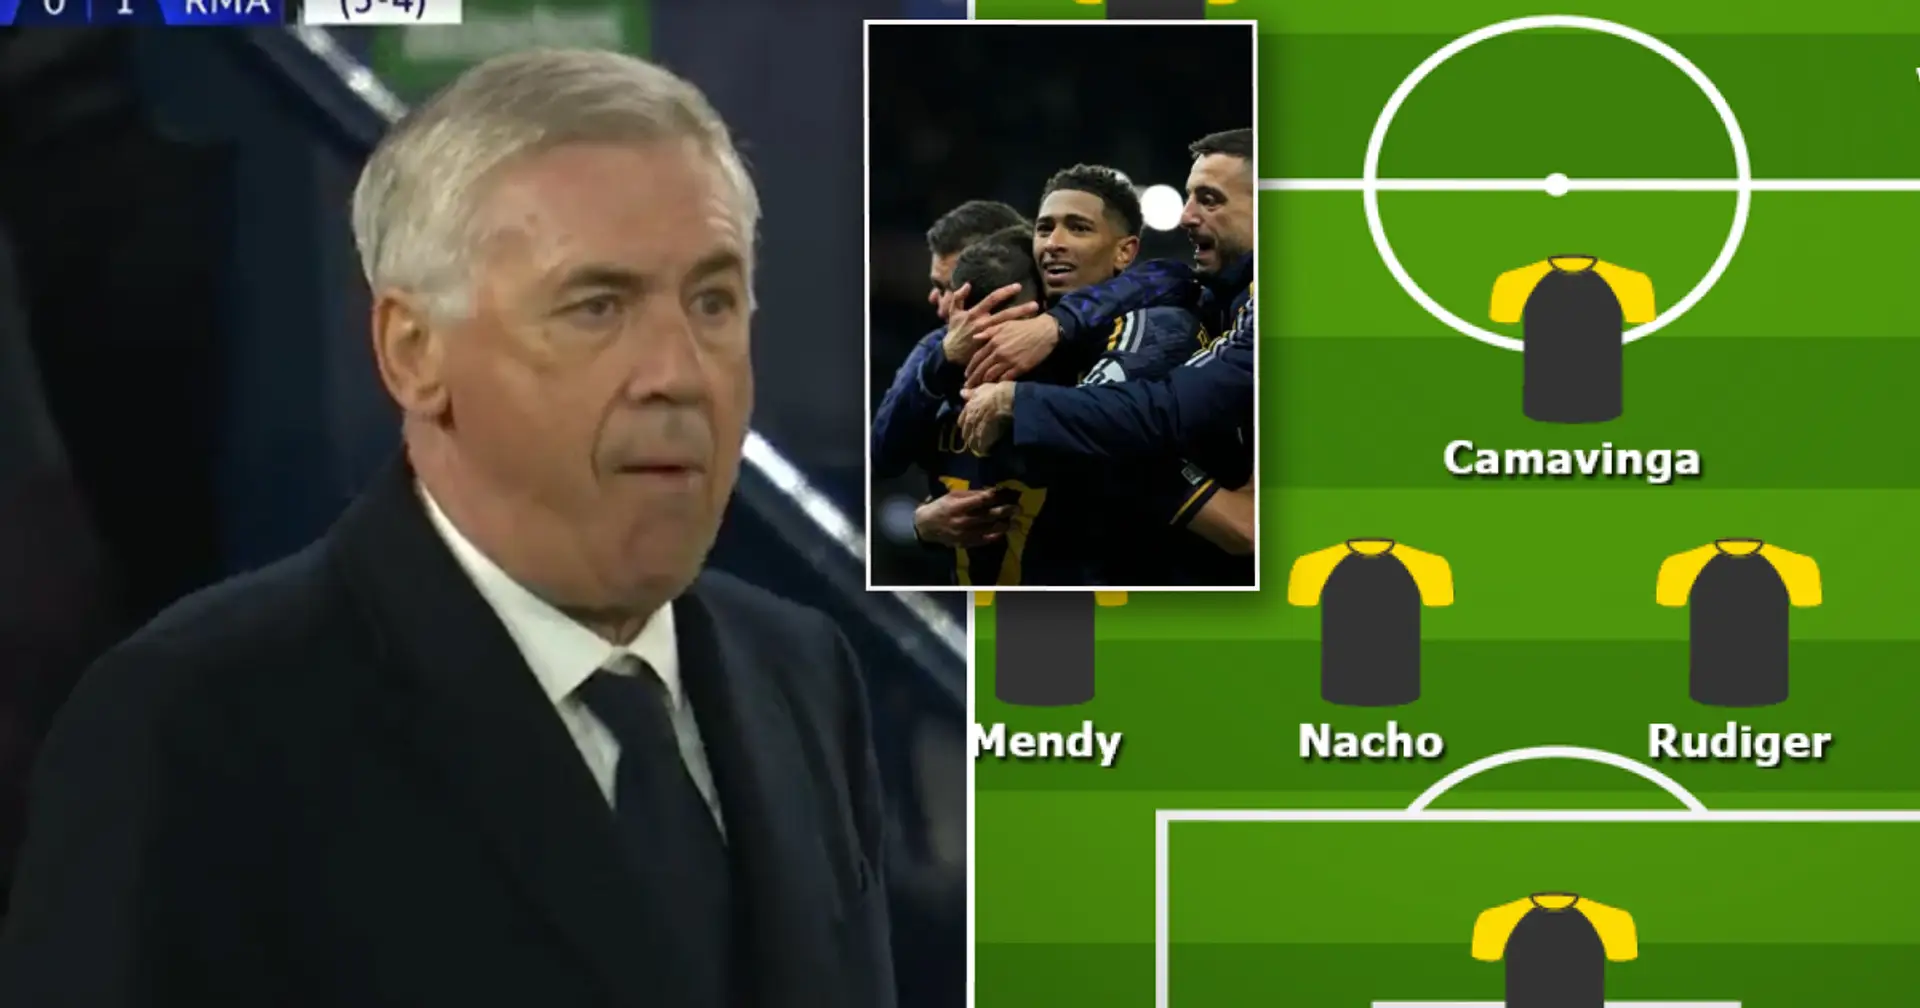 La mayor fortaleza del Real Madrid en la victoria ante el Man City mostrada en alineación, no son las tácticas de Ancelotti